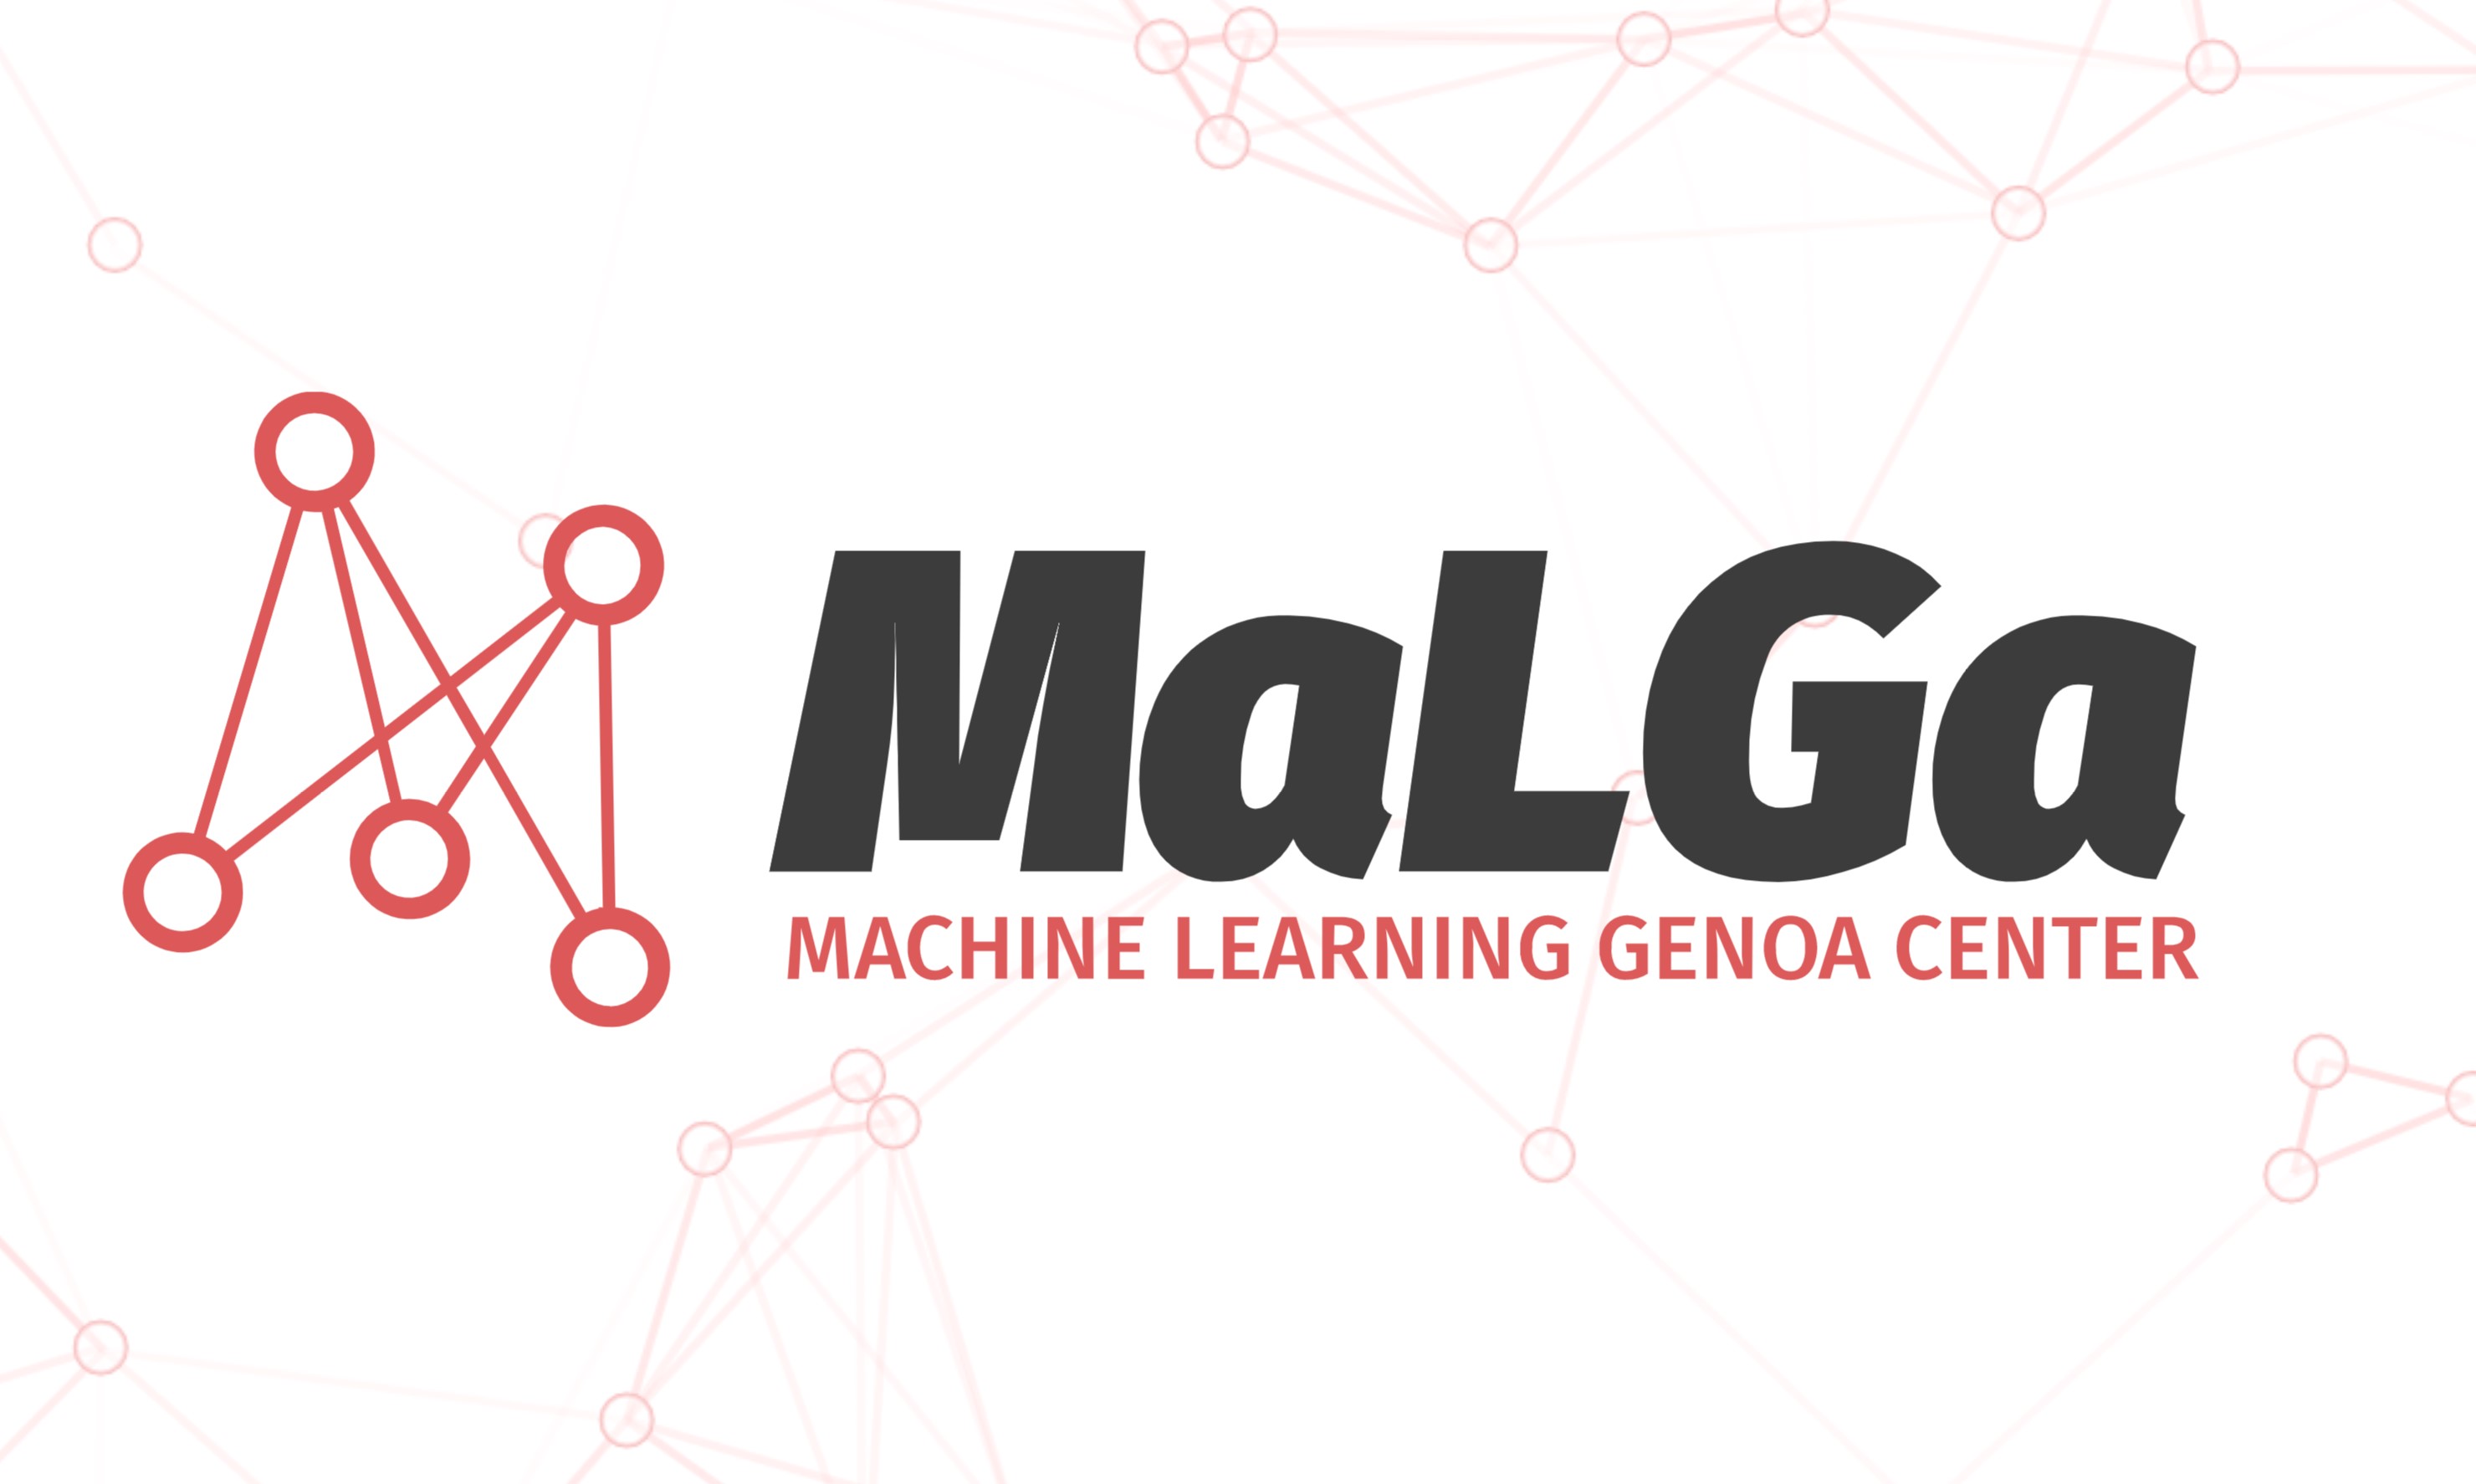 MaLGa logo